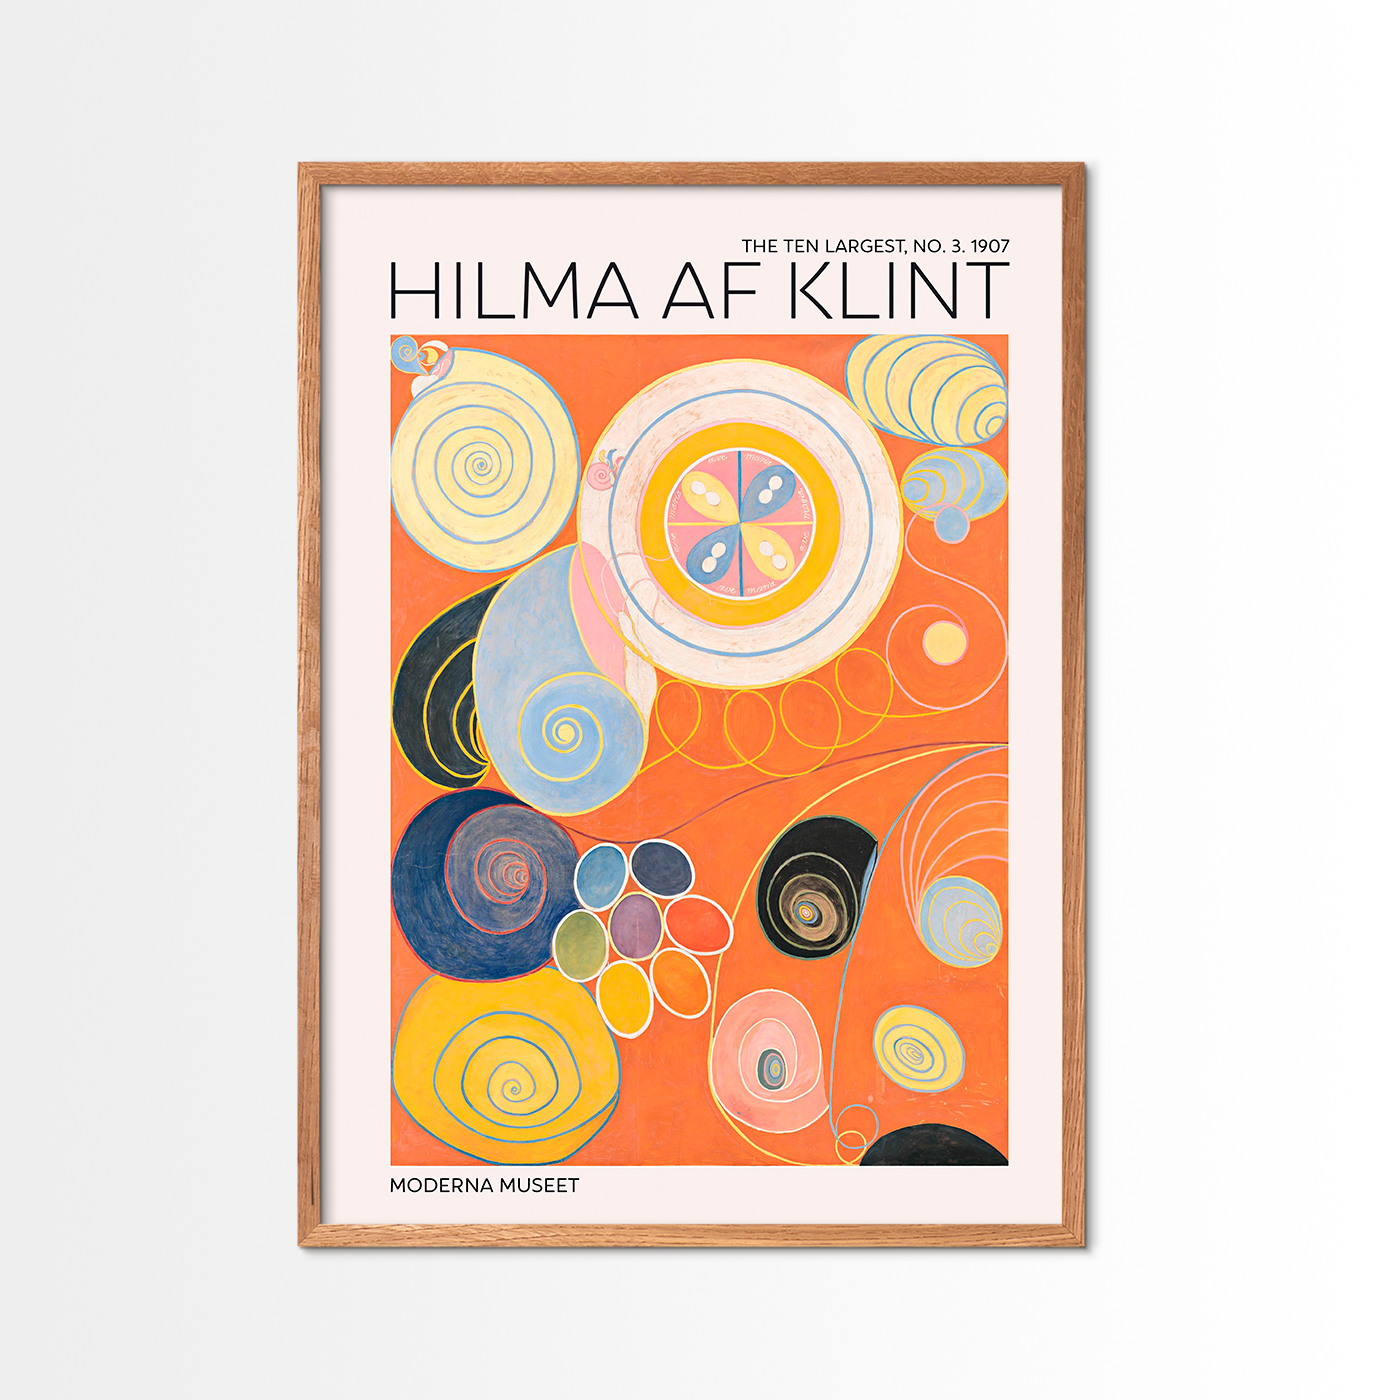 The Ten Largest No. 3 - Hilma Of Klint